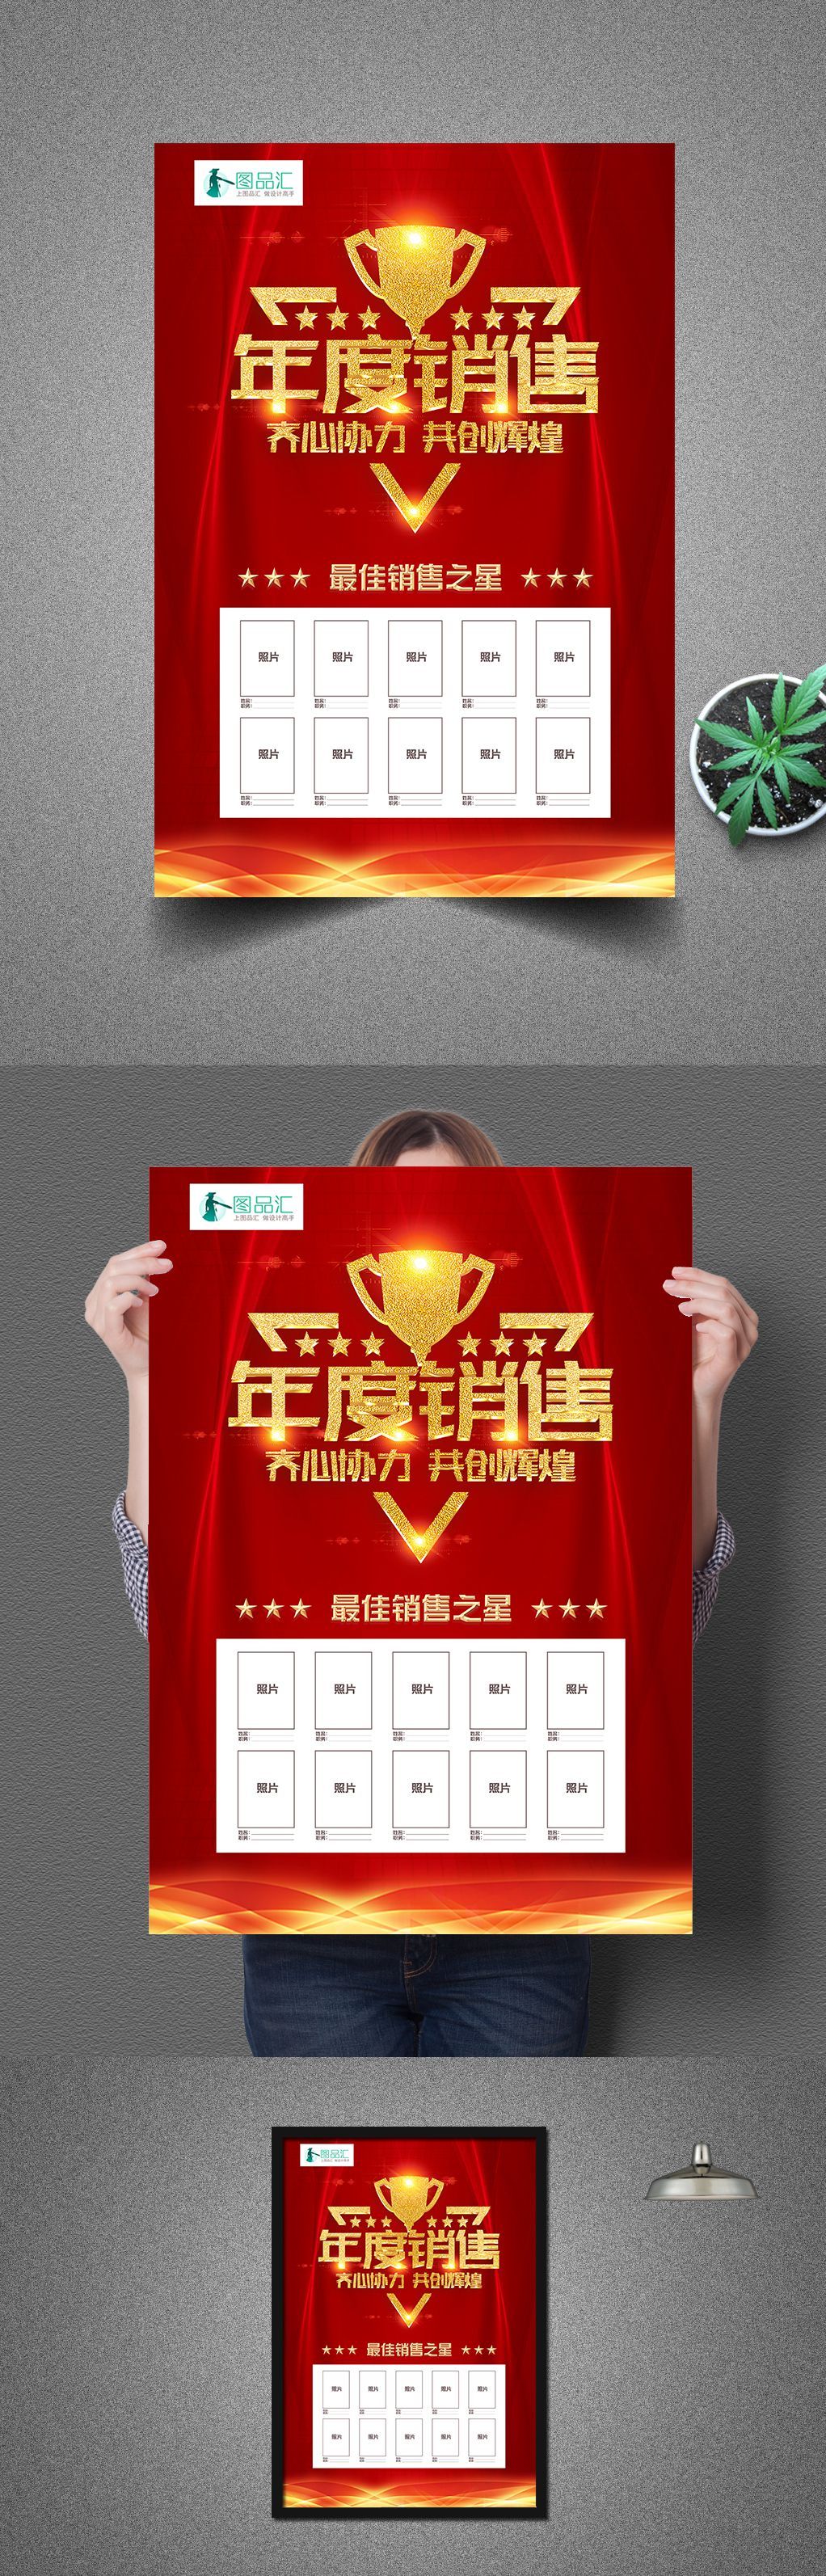 高端红金年度销售冠军光荣榜龙虎榜海报